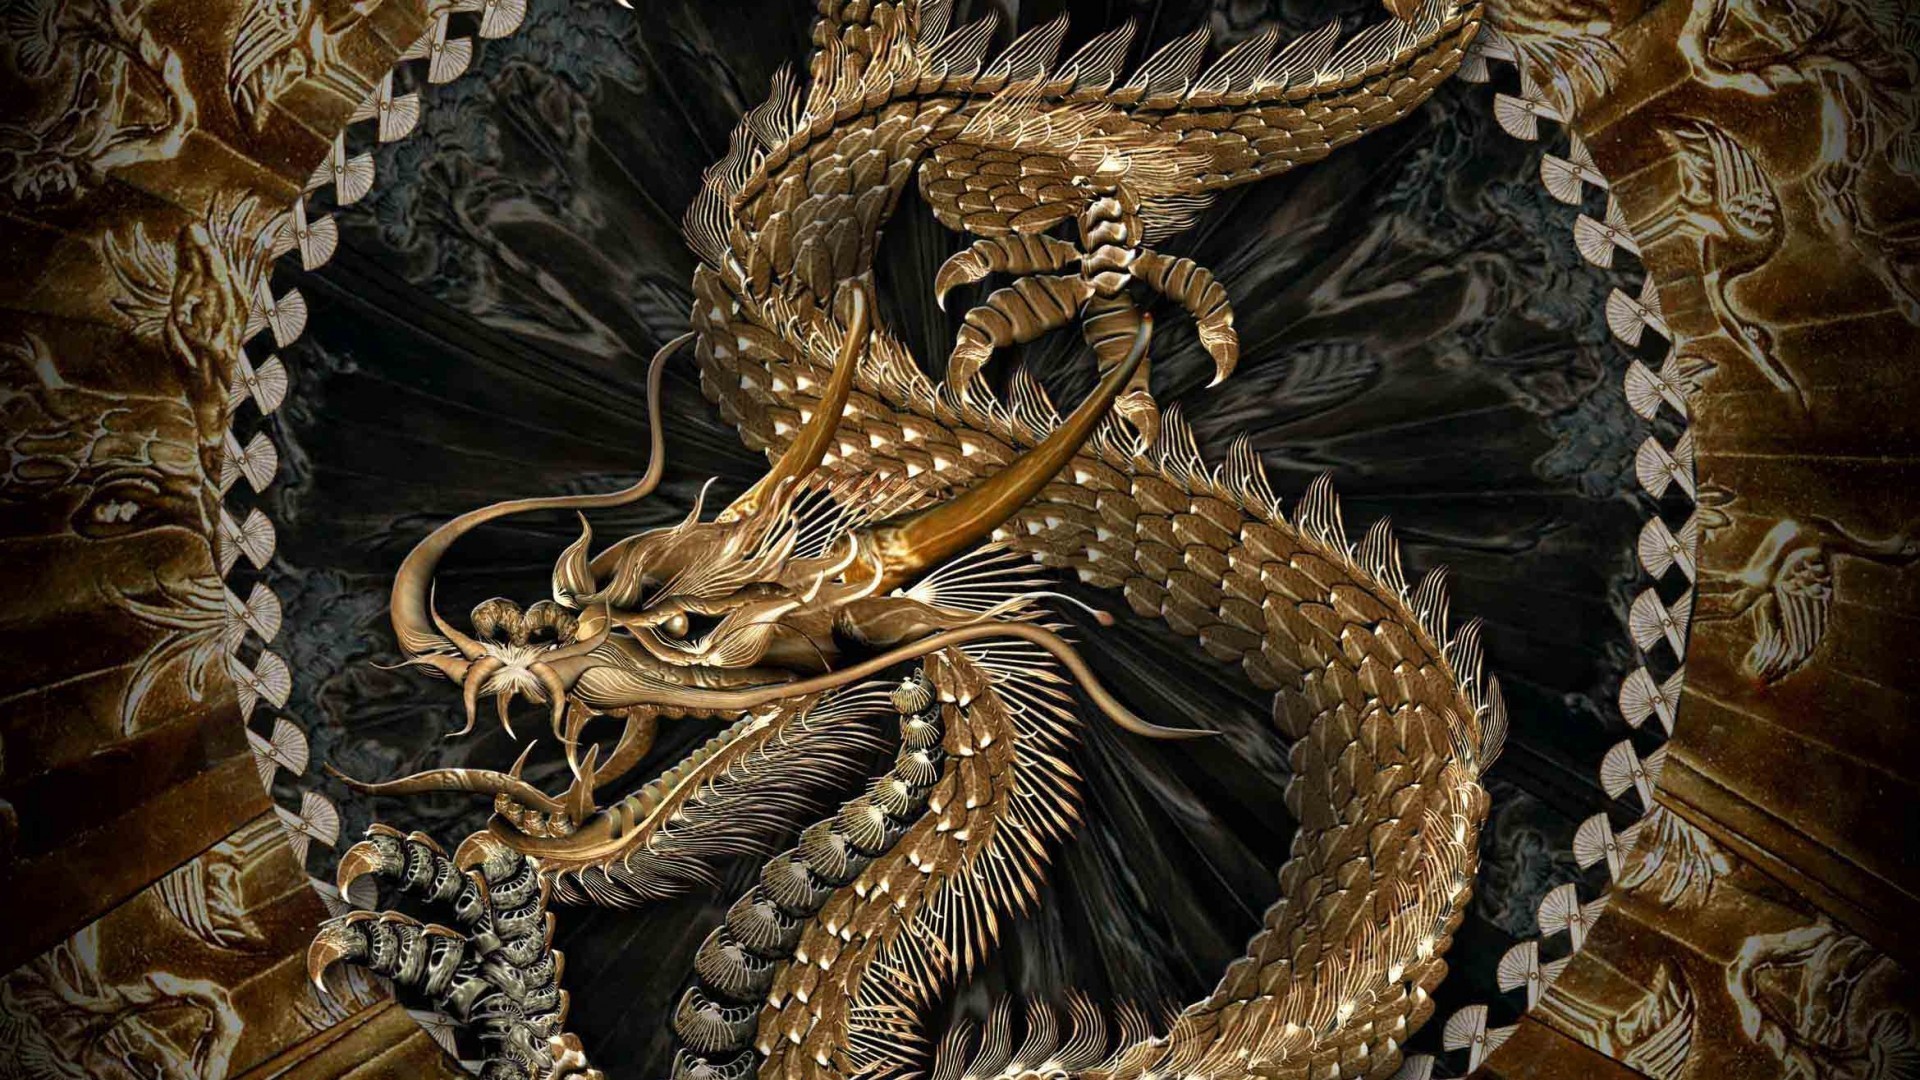 Rồng đẹp (Beautiful Dragon): Ngắm nhìn một con rồng đẹp như trong tranh vẽ chắc chắn sẽ khiến bạn bị mê hoặc bởi sức quyến rũ mạnh mẽ của nó. Con rồng với hình thể đầy uy lực, những chi tiết tinh xảo và màu sắc rực rỡ sẽ khiến bạn phải thán phục sự đẹp của nó.